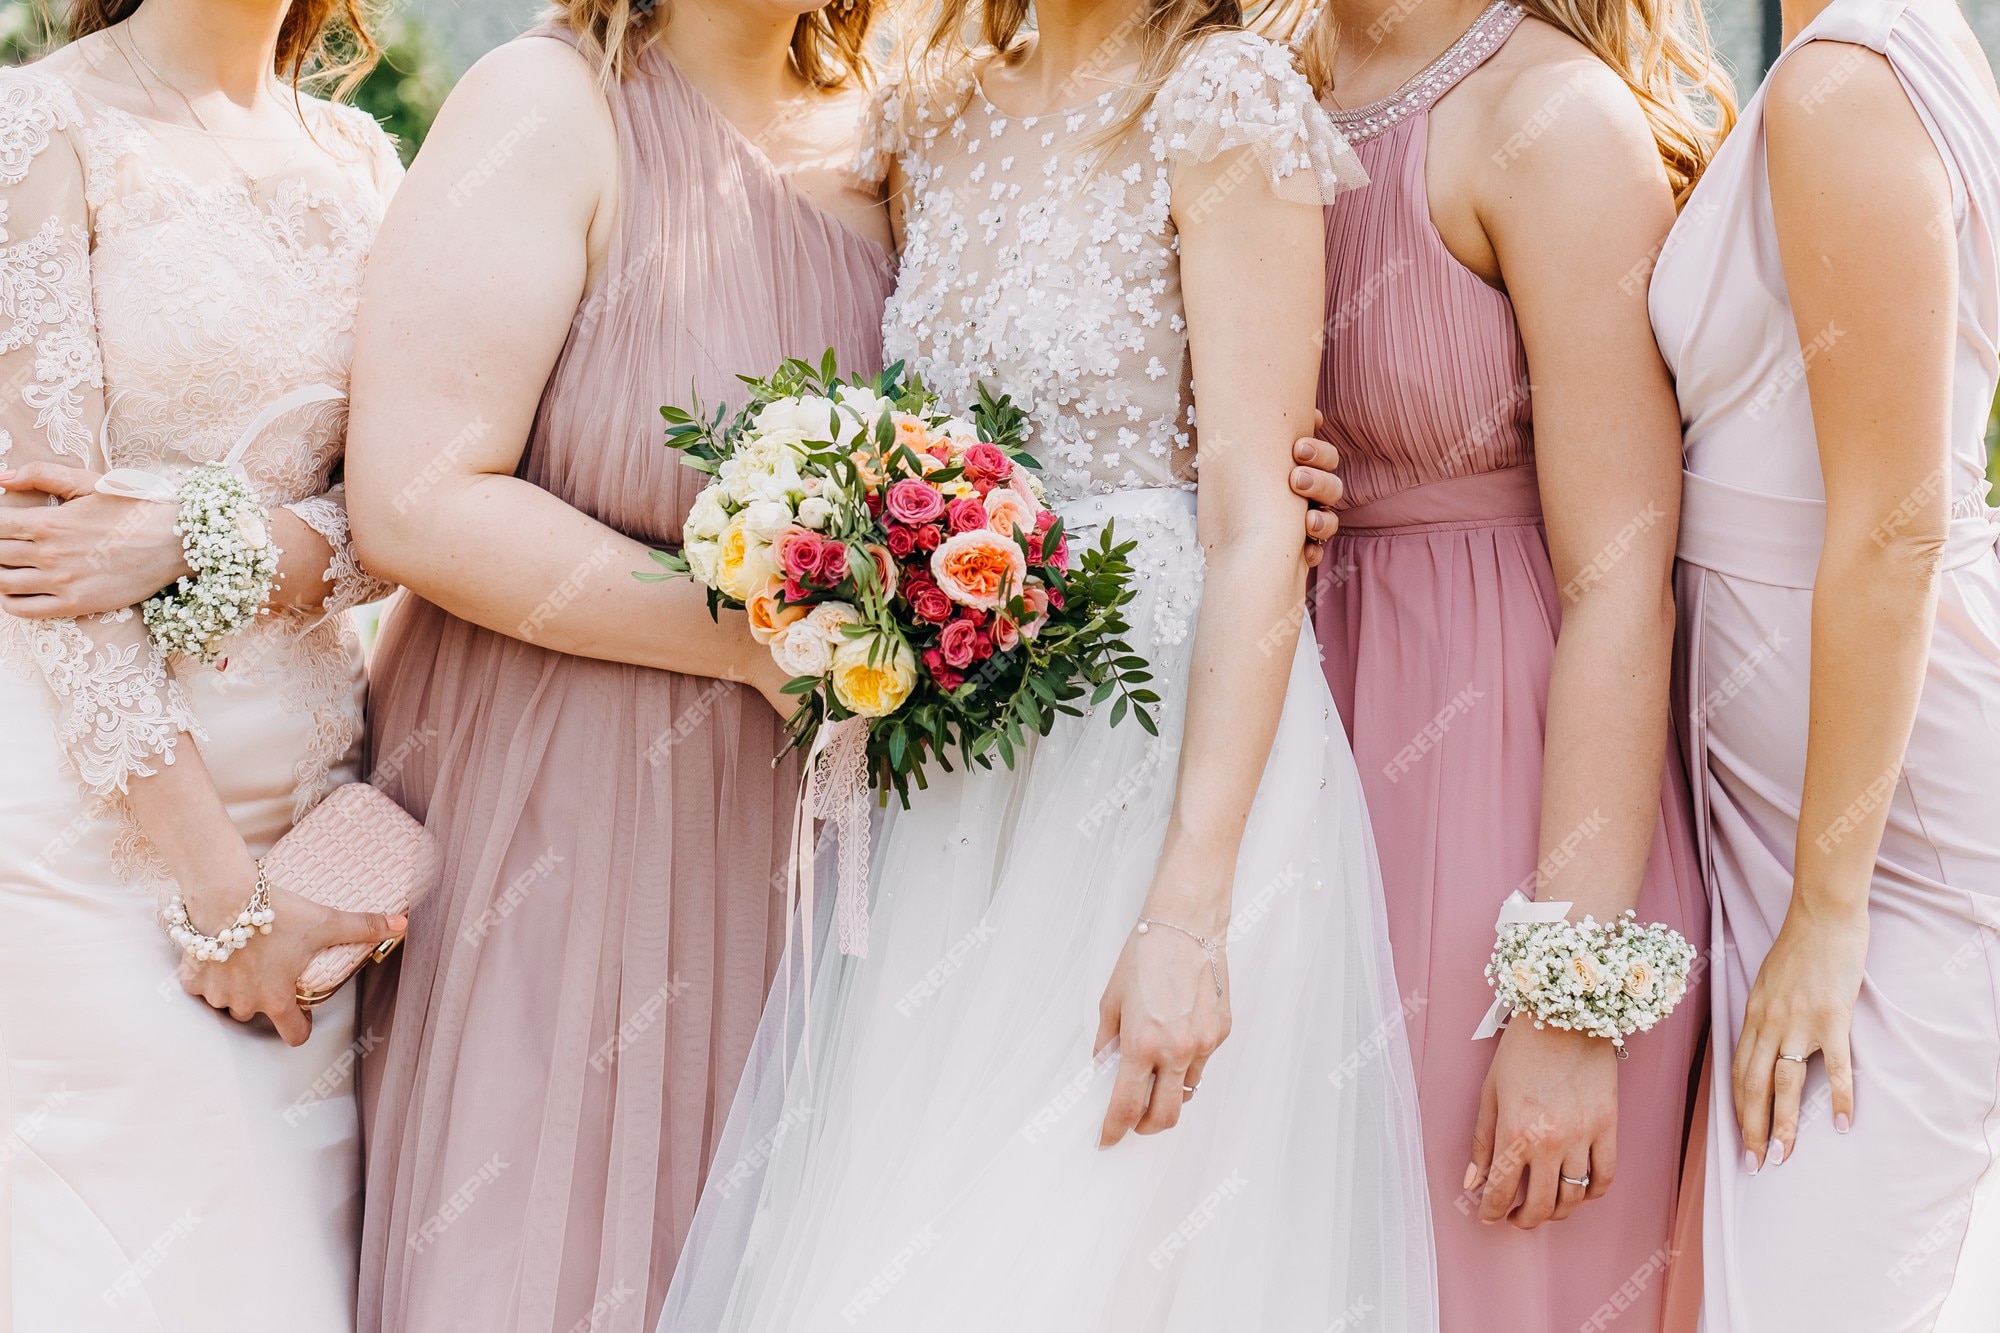 La novia y las de honor con vestidos maxi de tul en tonos rosa pastel | Foto